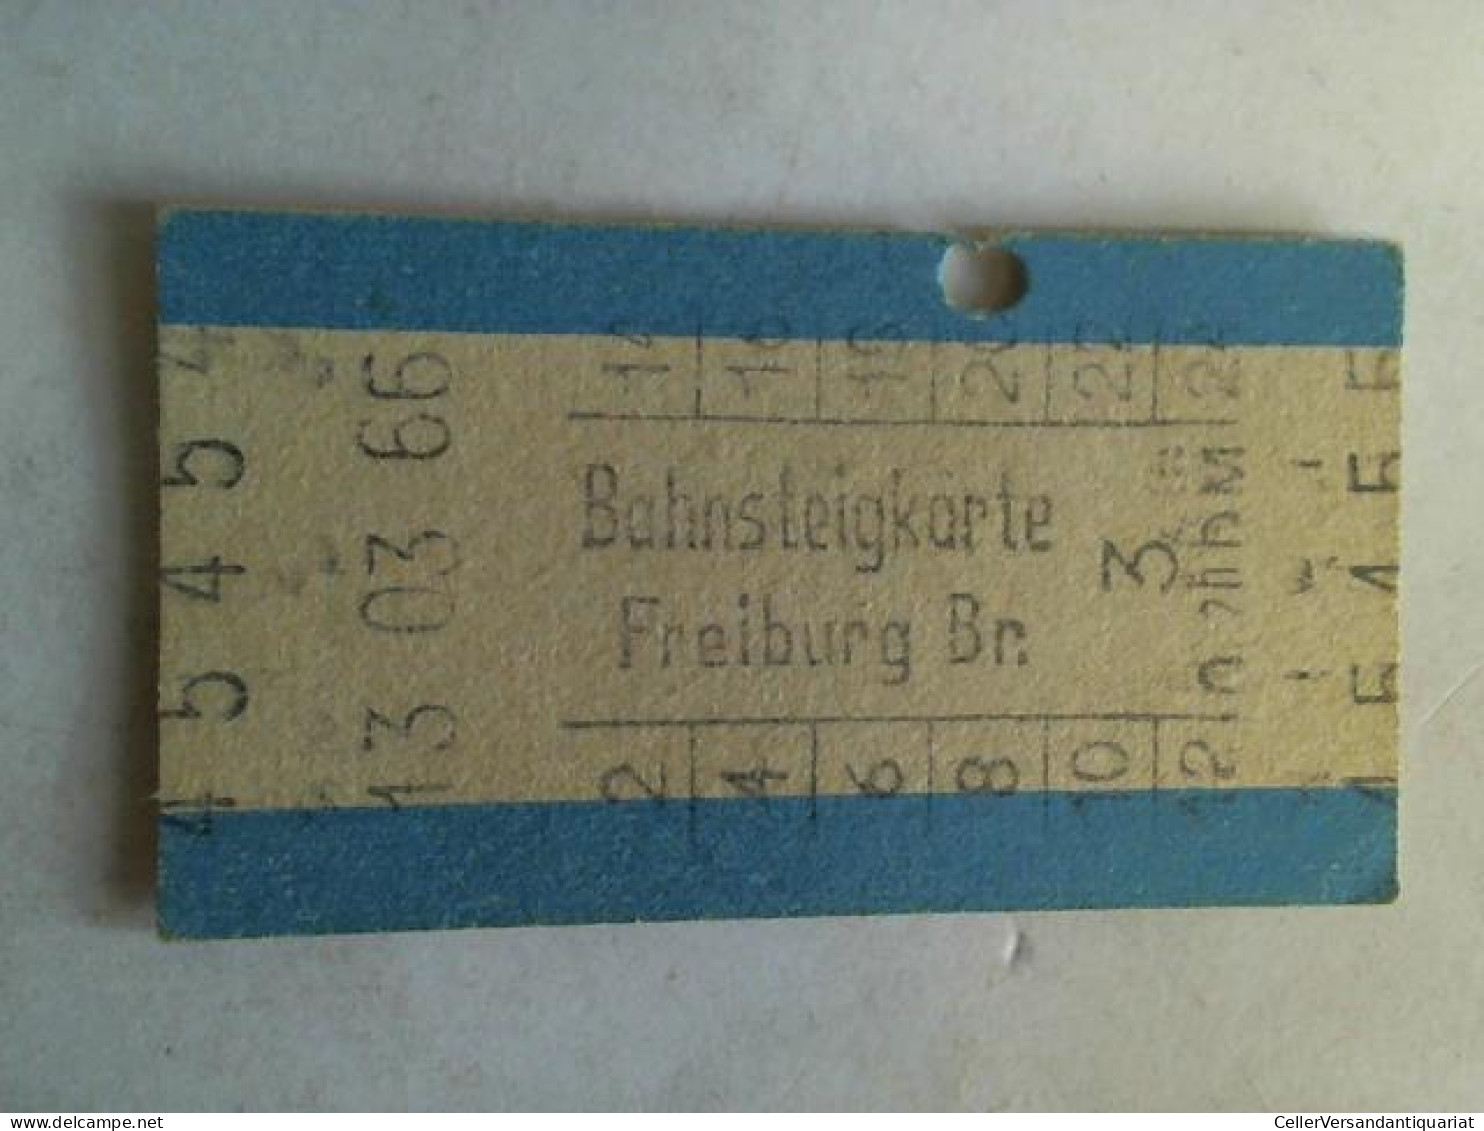 Bahnsteigkarte Freiburg Br.  Von (Eisenbahn-Fahrkarte) - Unclassified